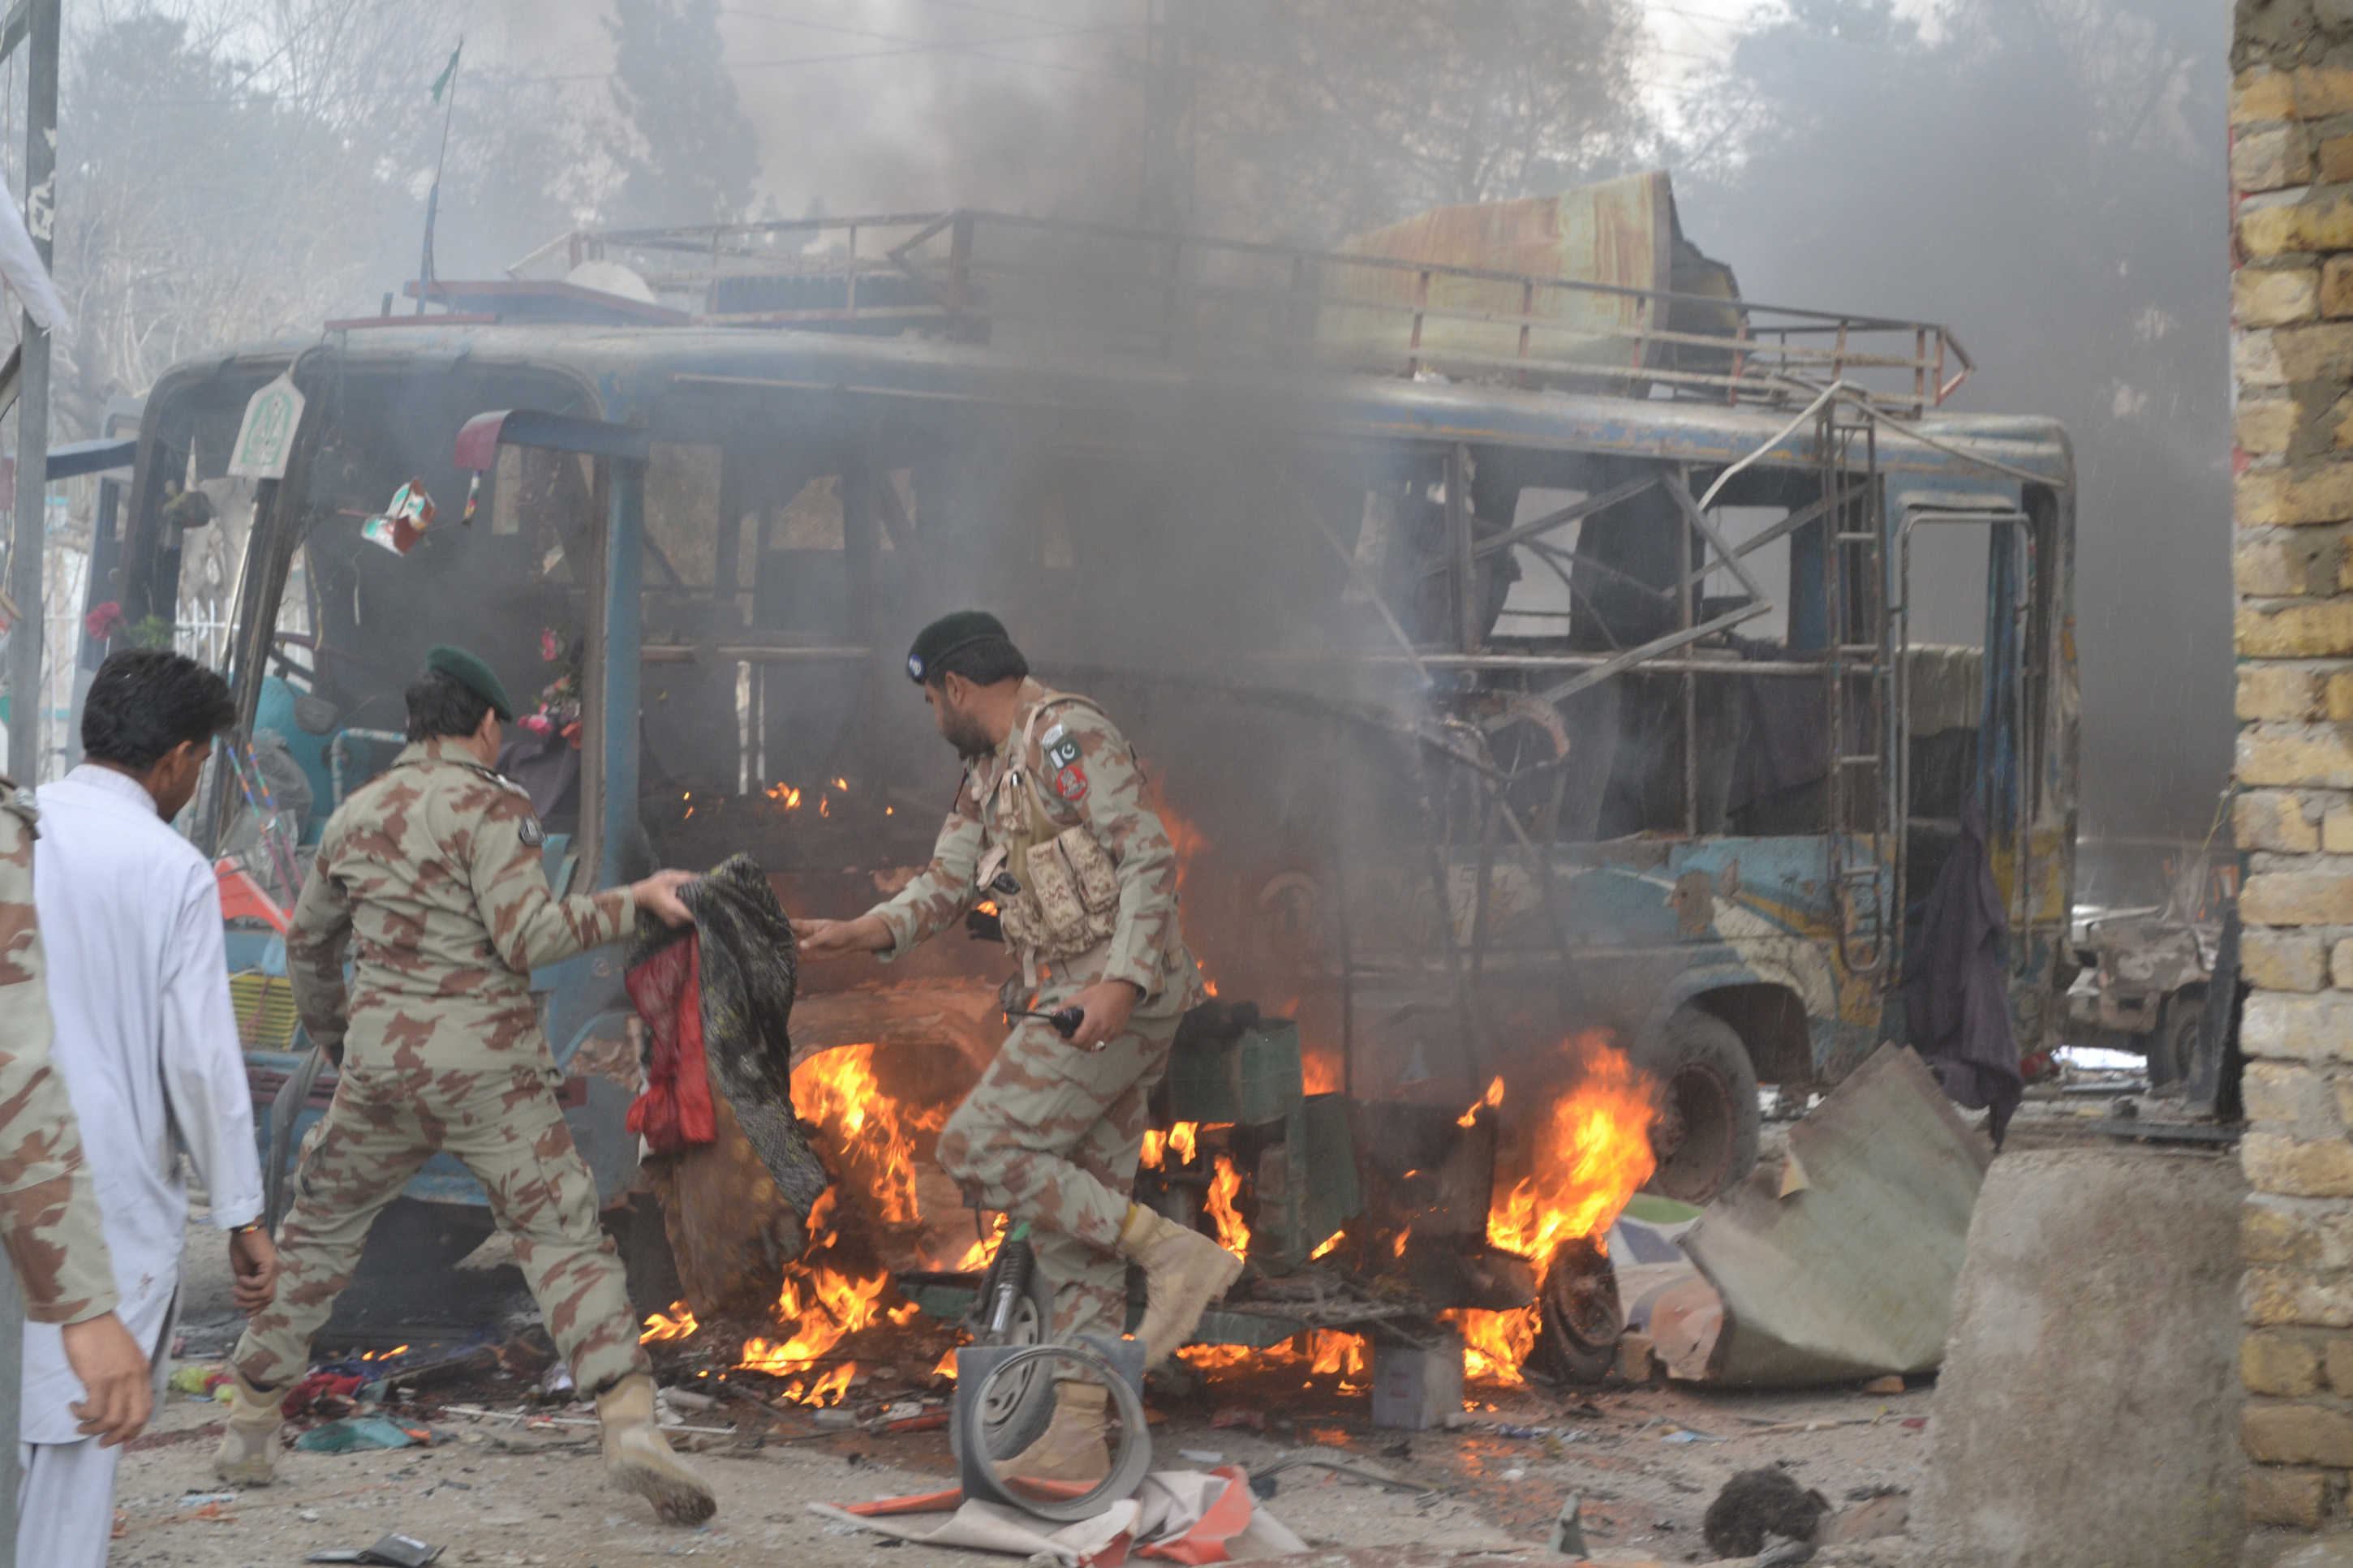 the affected bus photo banaras khan express